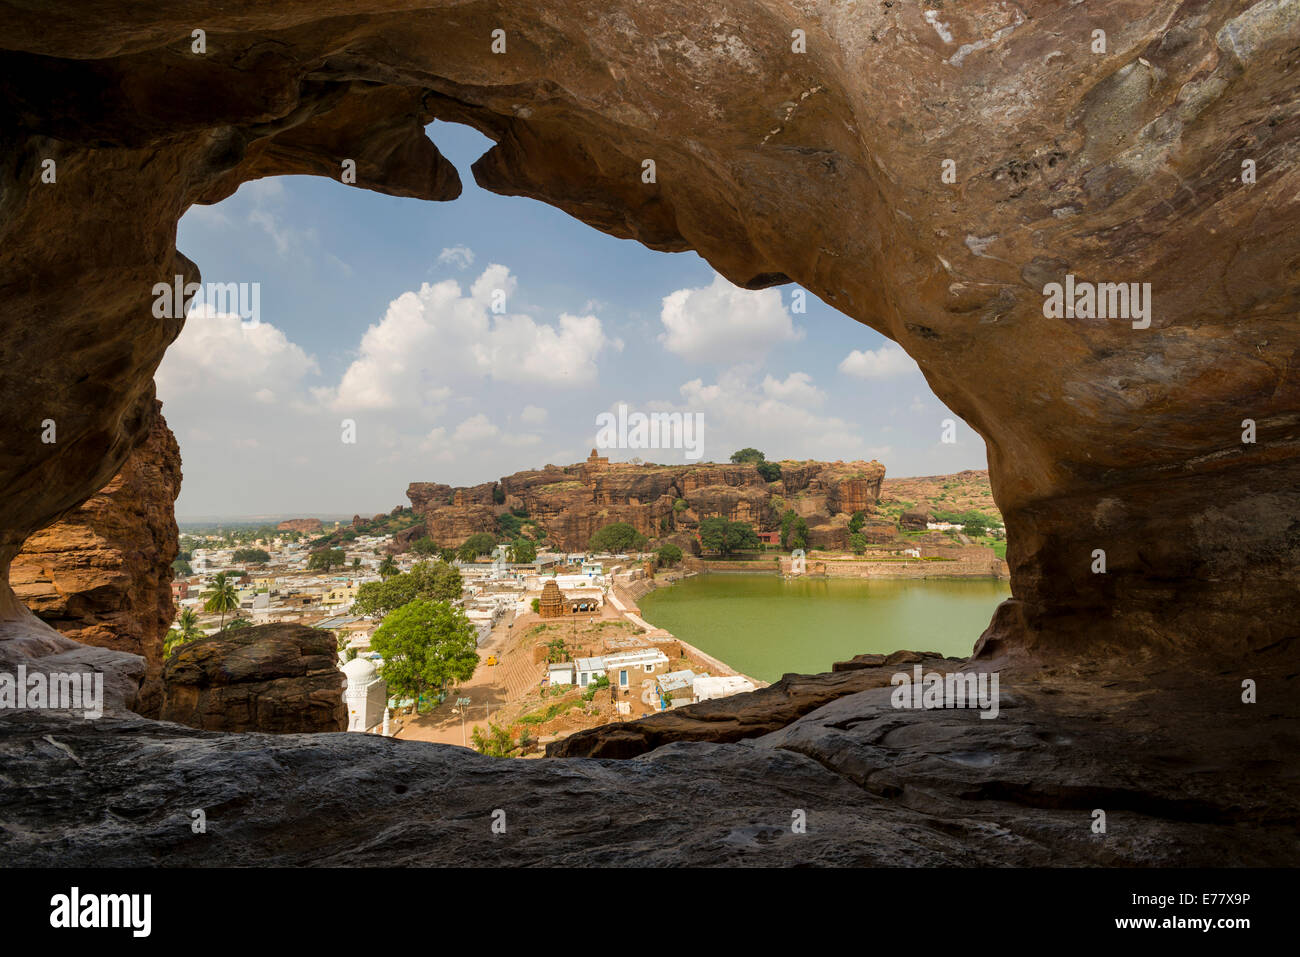 Vue de Badami grottes taillées dans la roche solide lors de la 6e à la 7e siècle, de l'autre côté du lac, vers la ville, Badami, Karnataka Banque D'Images